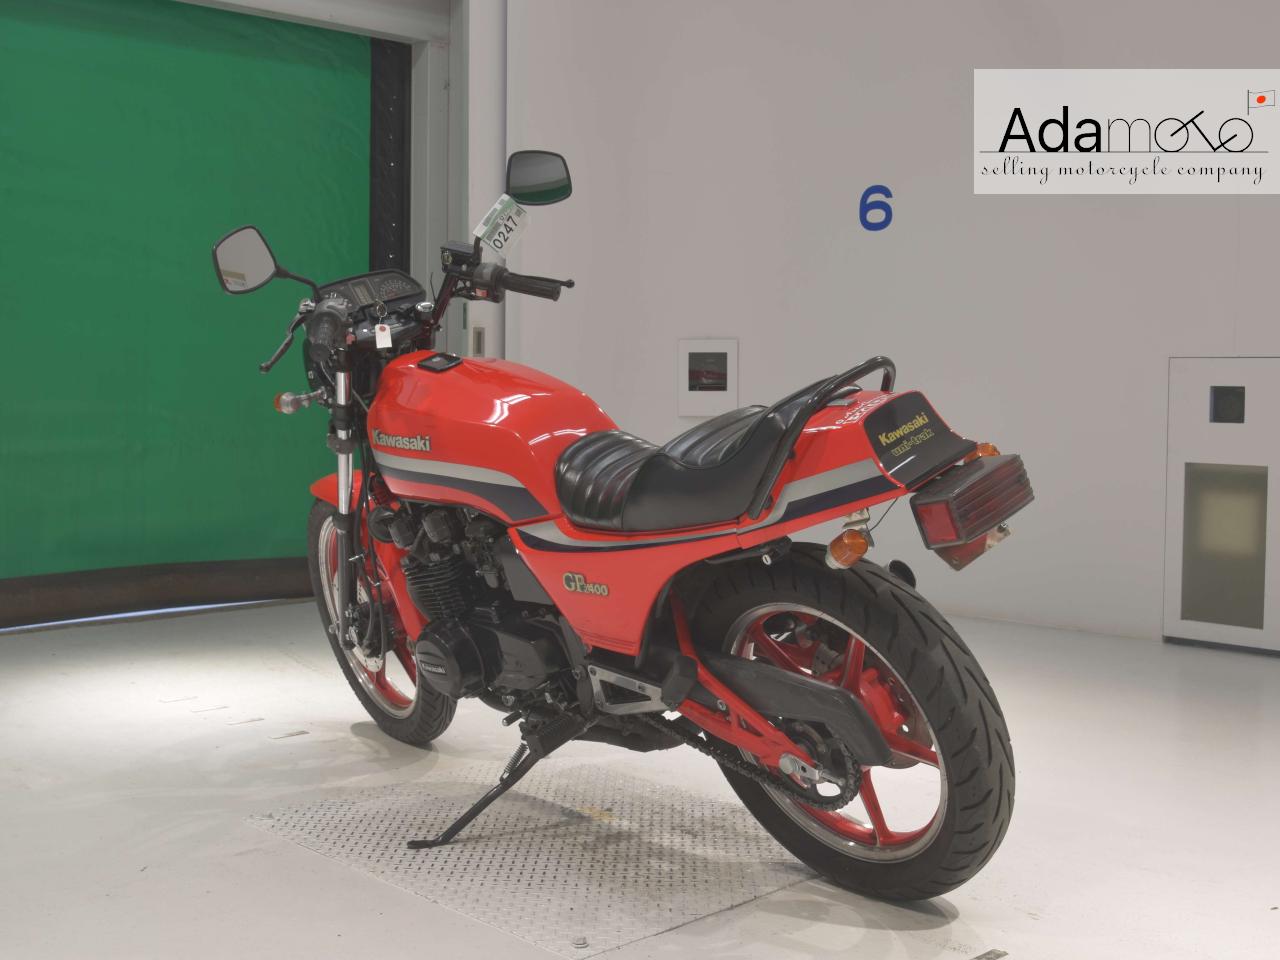 Kawasaki Z400GP - Adamoto - Motorcycles from Japan